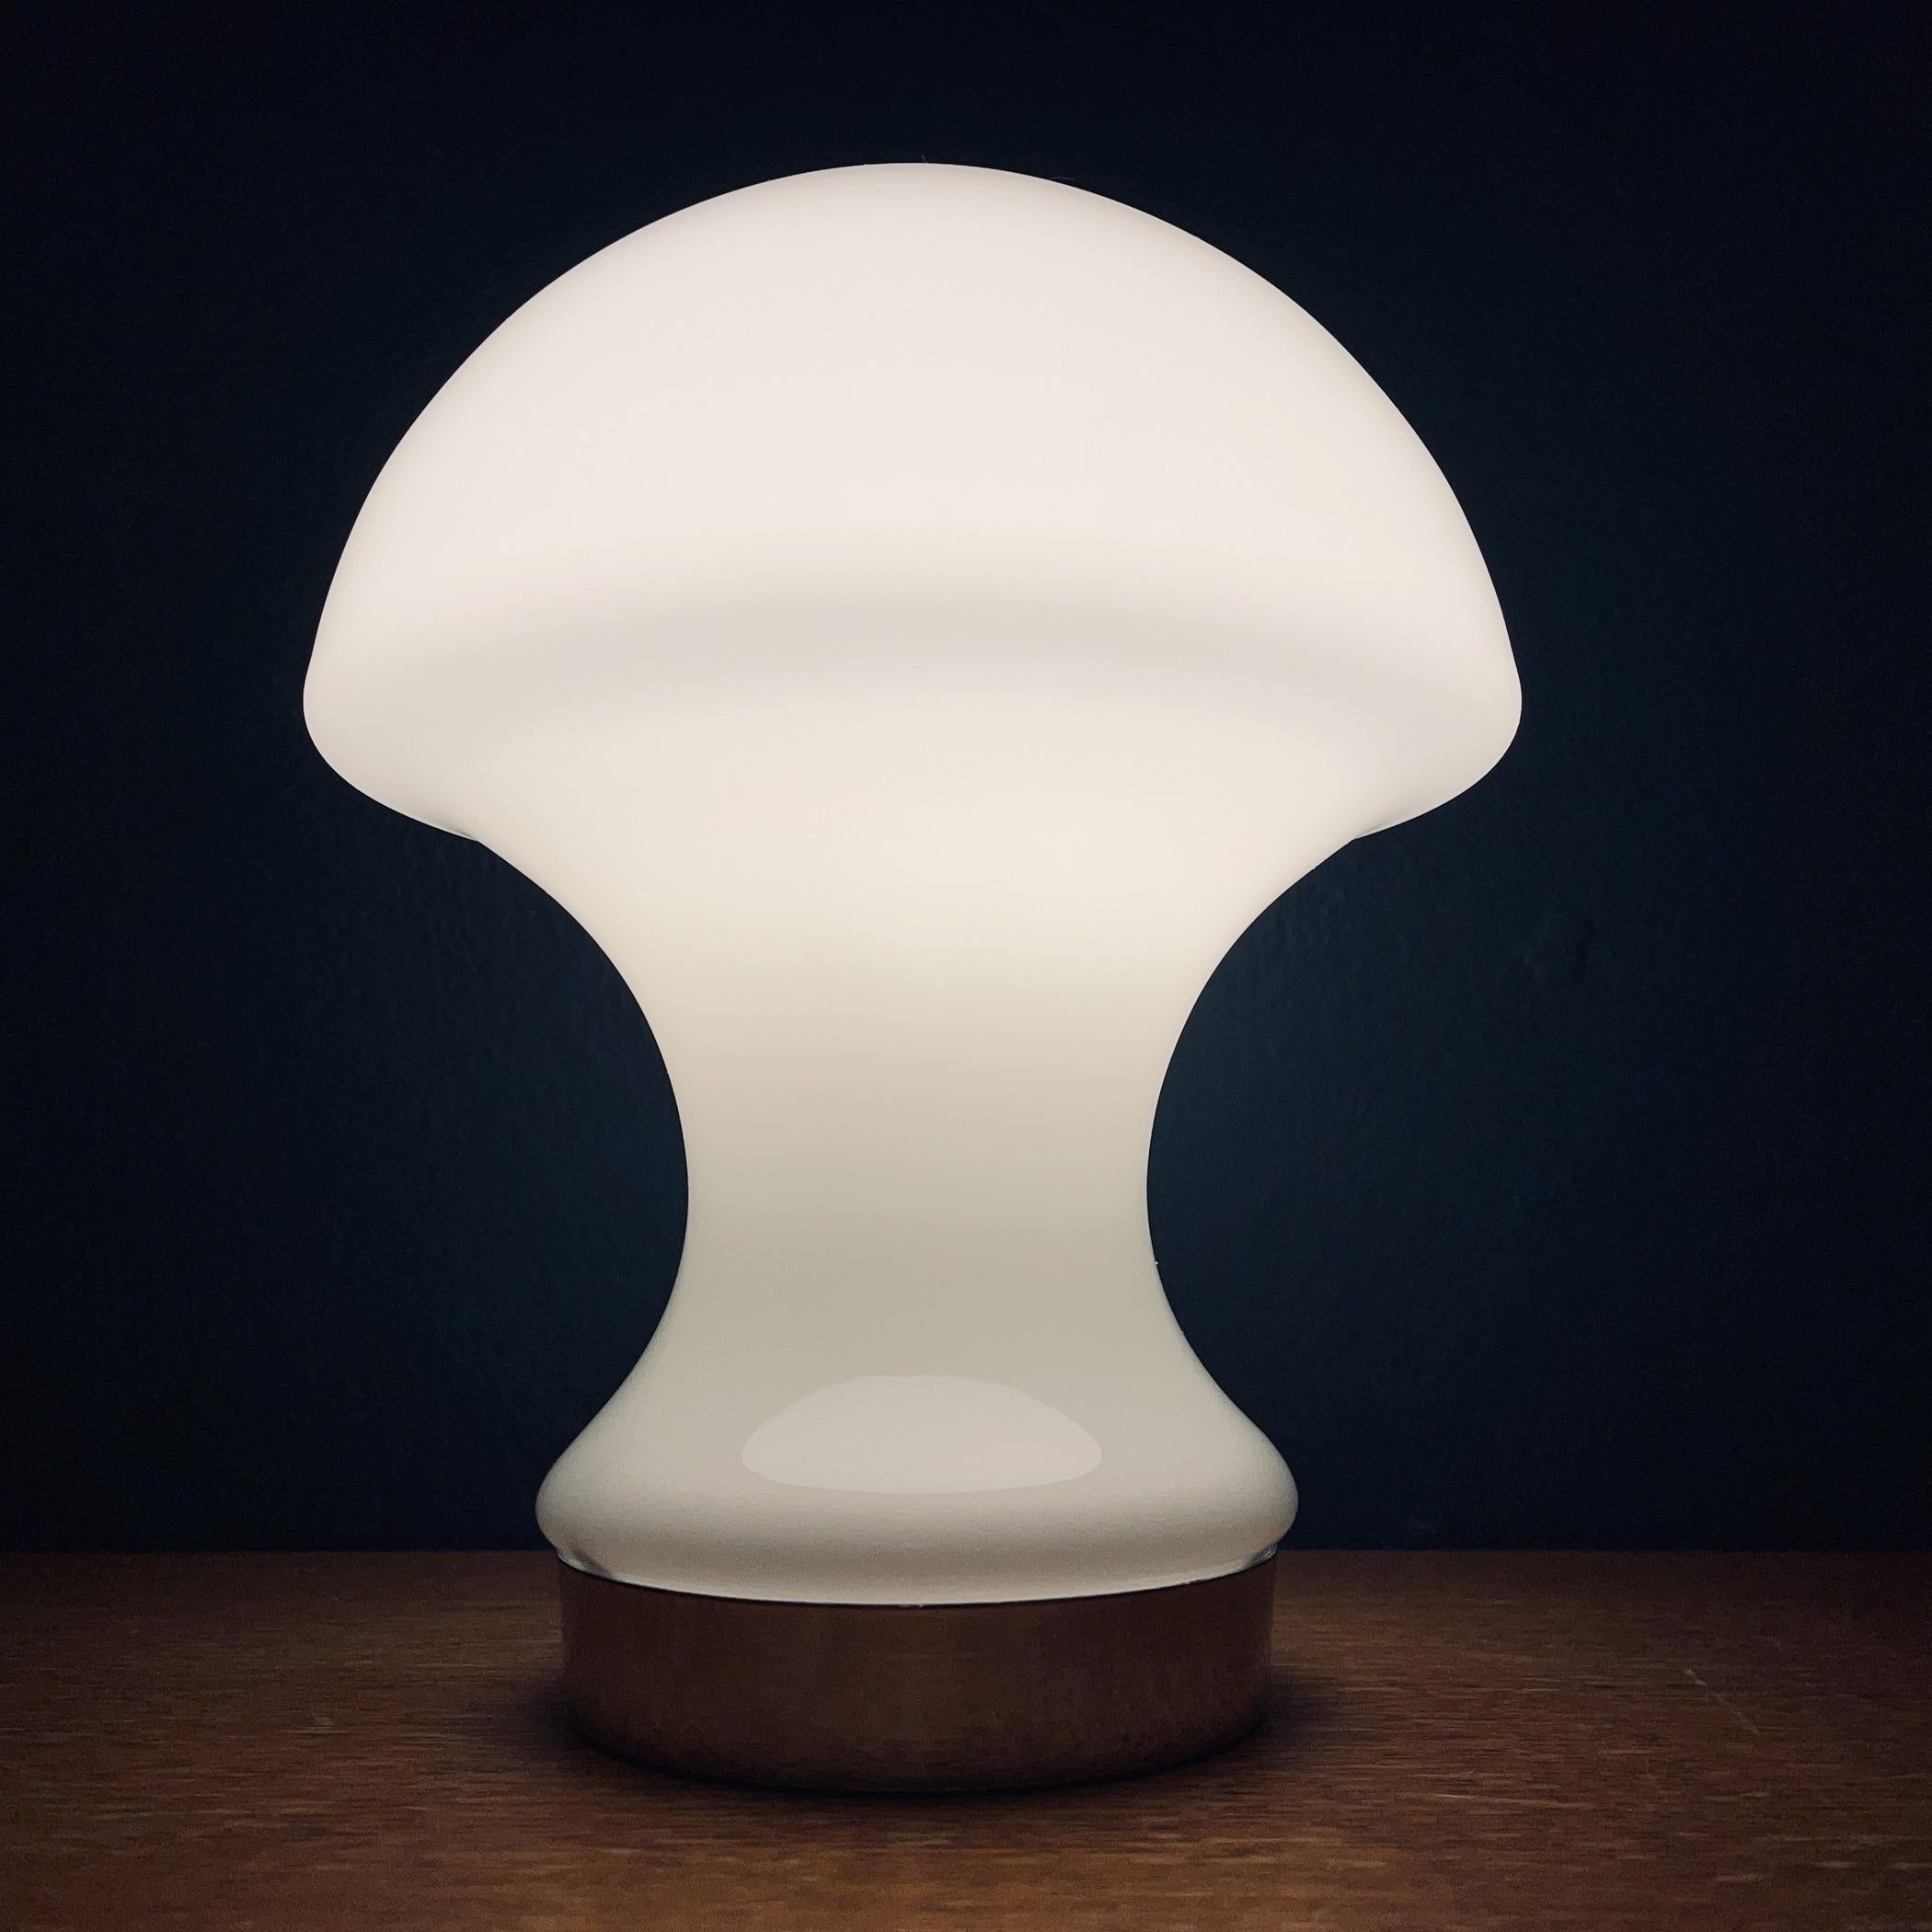 La lampe de table vintage blanche en forme de champignon a été fabriquée en Italie dans les années 1980.
La lampe rétro apportera à votre maison l'atmosphère de l'Italie des années 70, l'époque de l'ère spatiale. Une lampe de table du milieu du